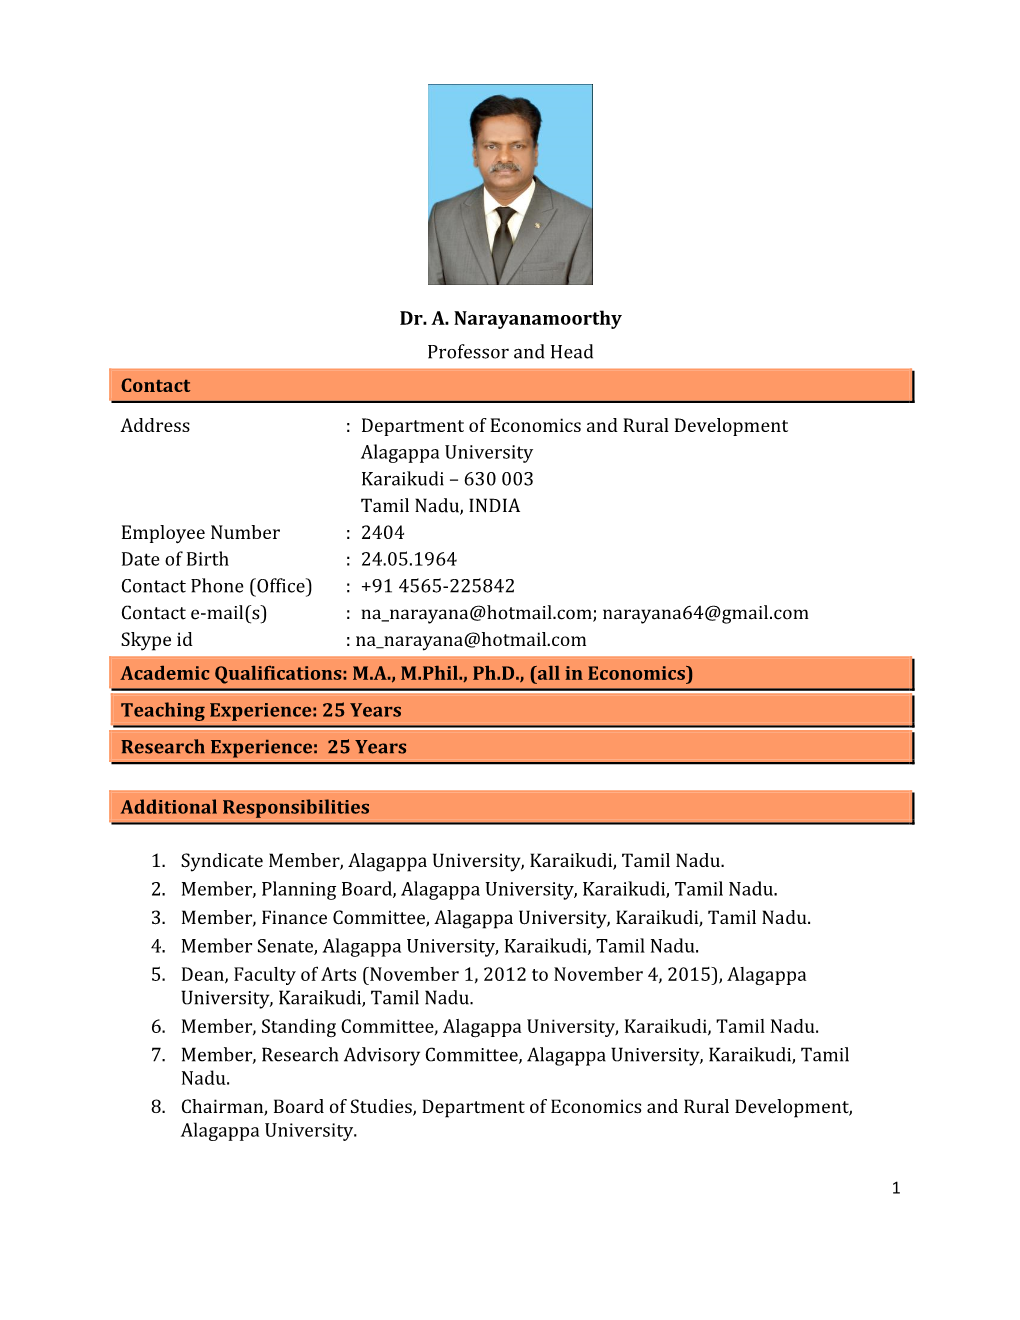 Dr. A. Narayanamoorthy